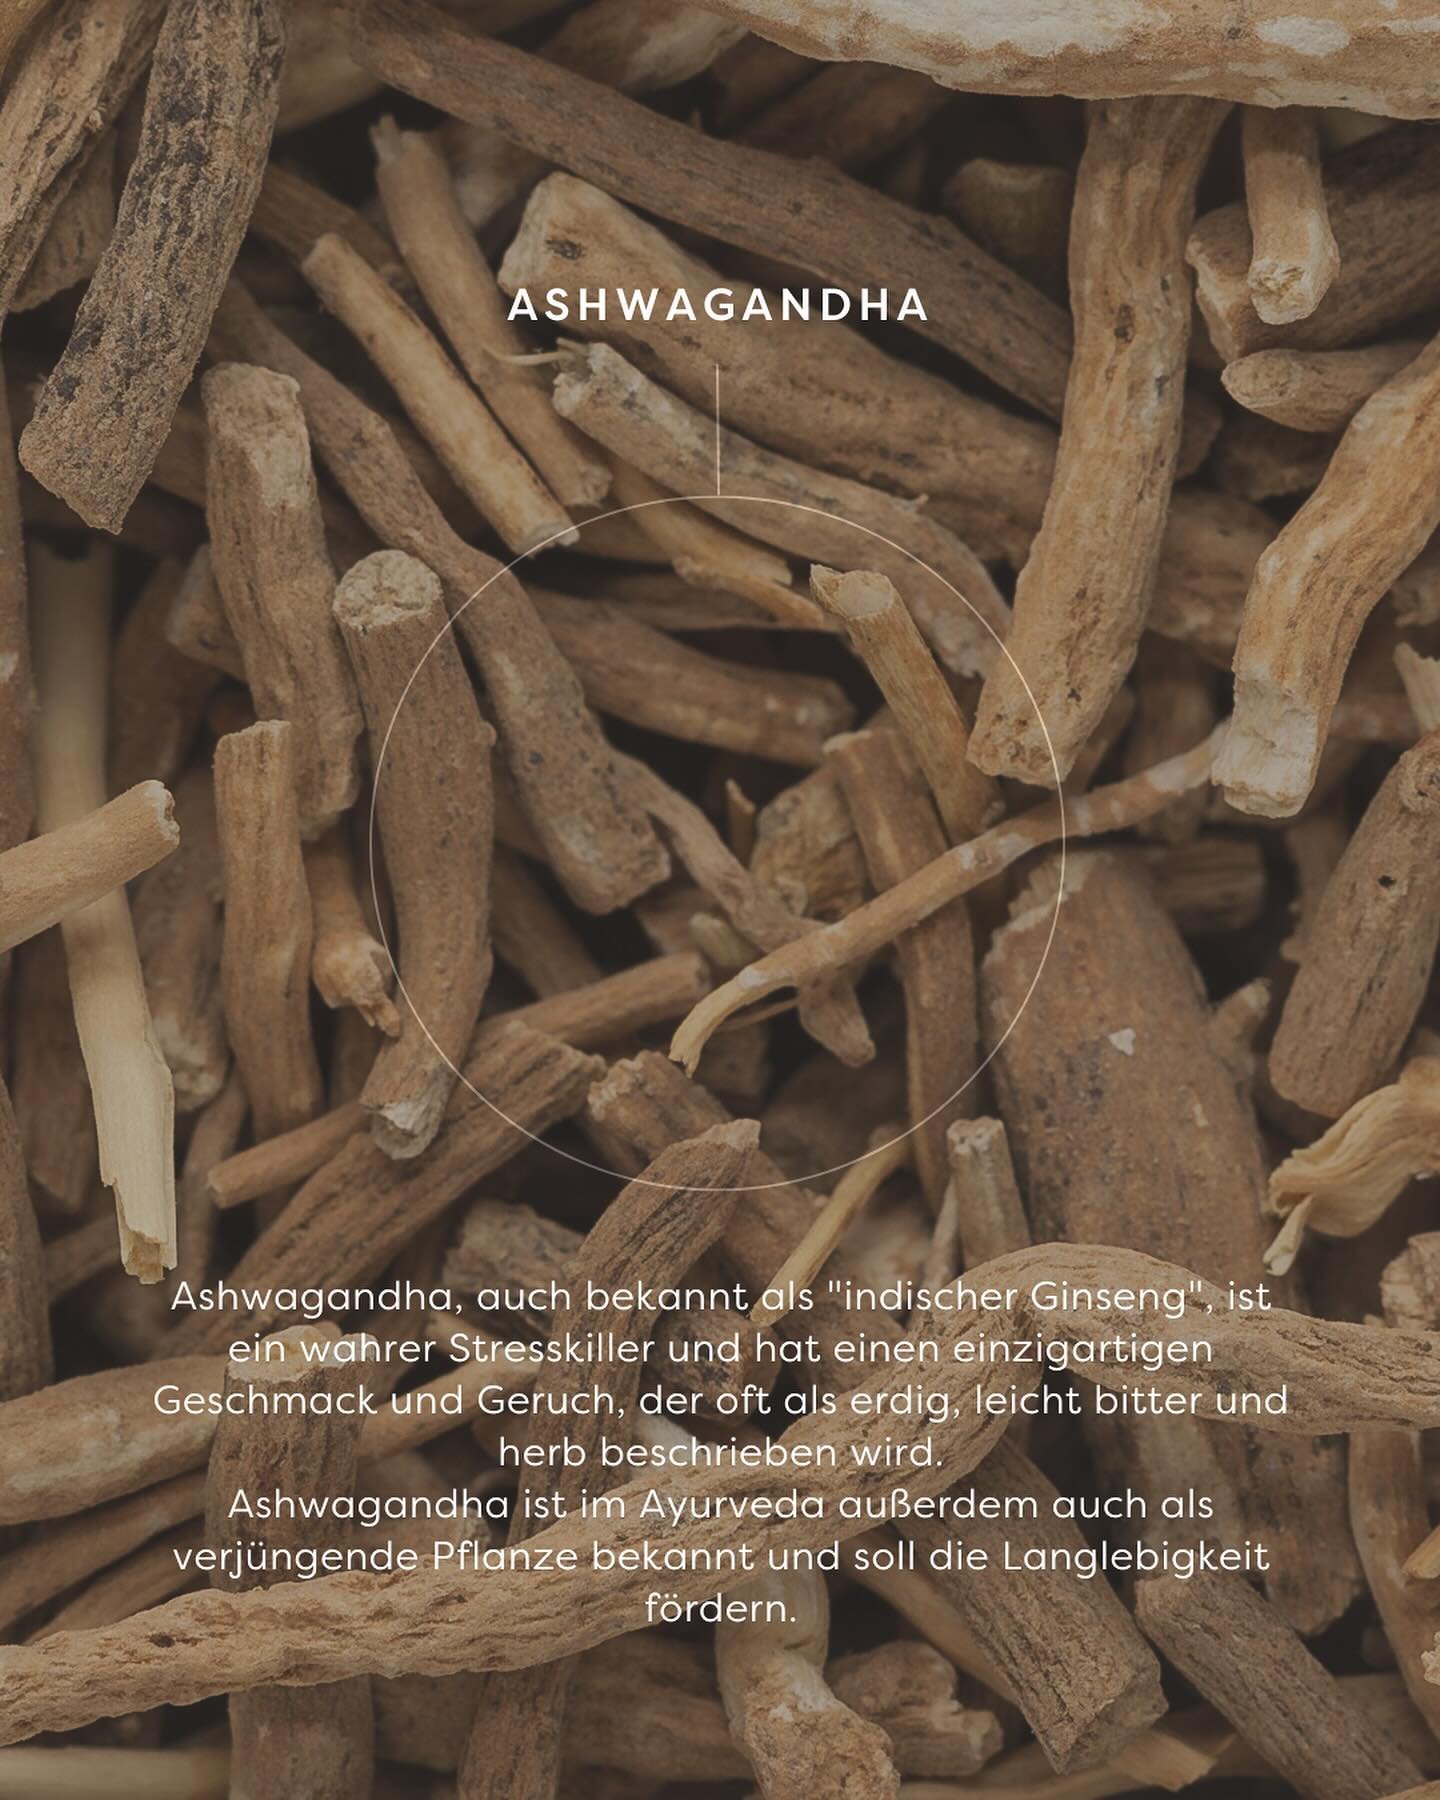 Ashwagandha, auch als &bdquo;Schlafbeere&ldquo; oder &bdquo;indischer Ginseng&ldquo; bekannt, wird aus den Wurzeln der Ashwagandha-Pflanze hergestellt. Sie kann als Tee, Tinktur, Kapseln oder &Ouml;l verwendet werden, um Stress abzubauen, einen ruhig